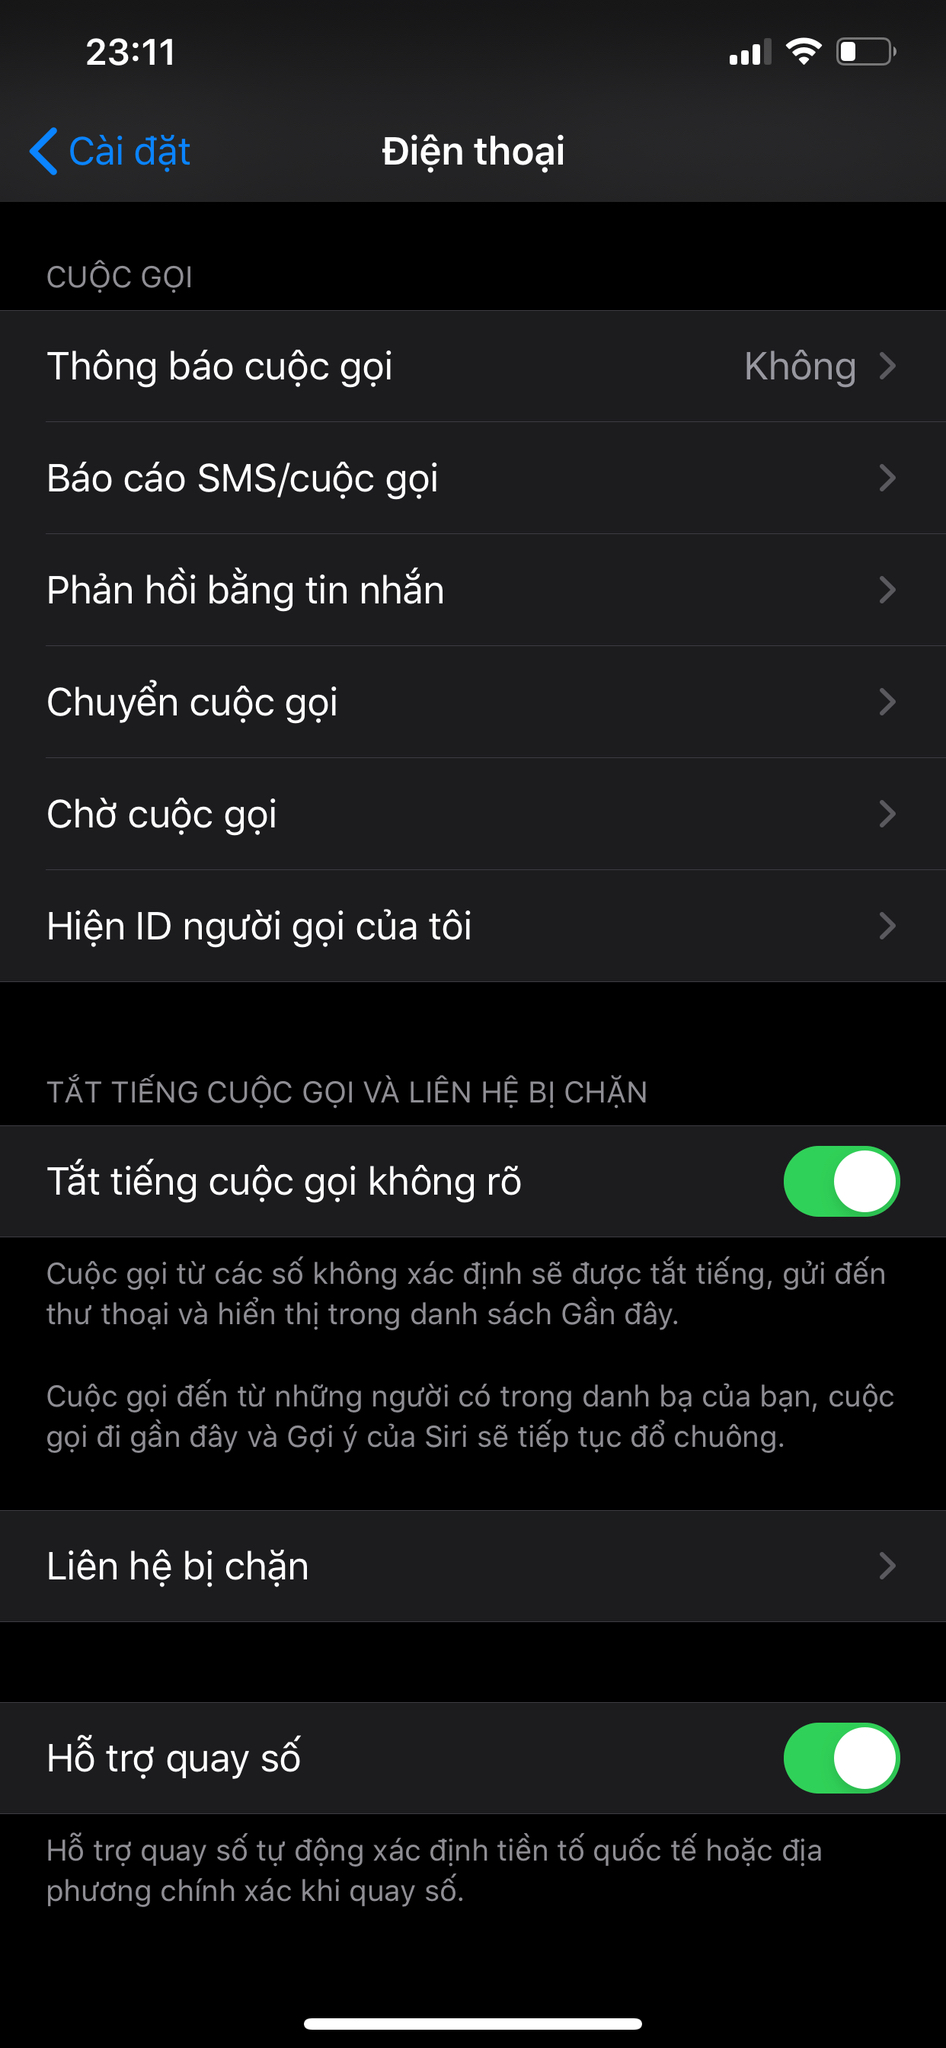 iPhone 6, 6 Plus có sóng nhưng không gọi được tại Hà Nội